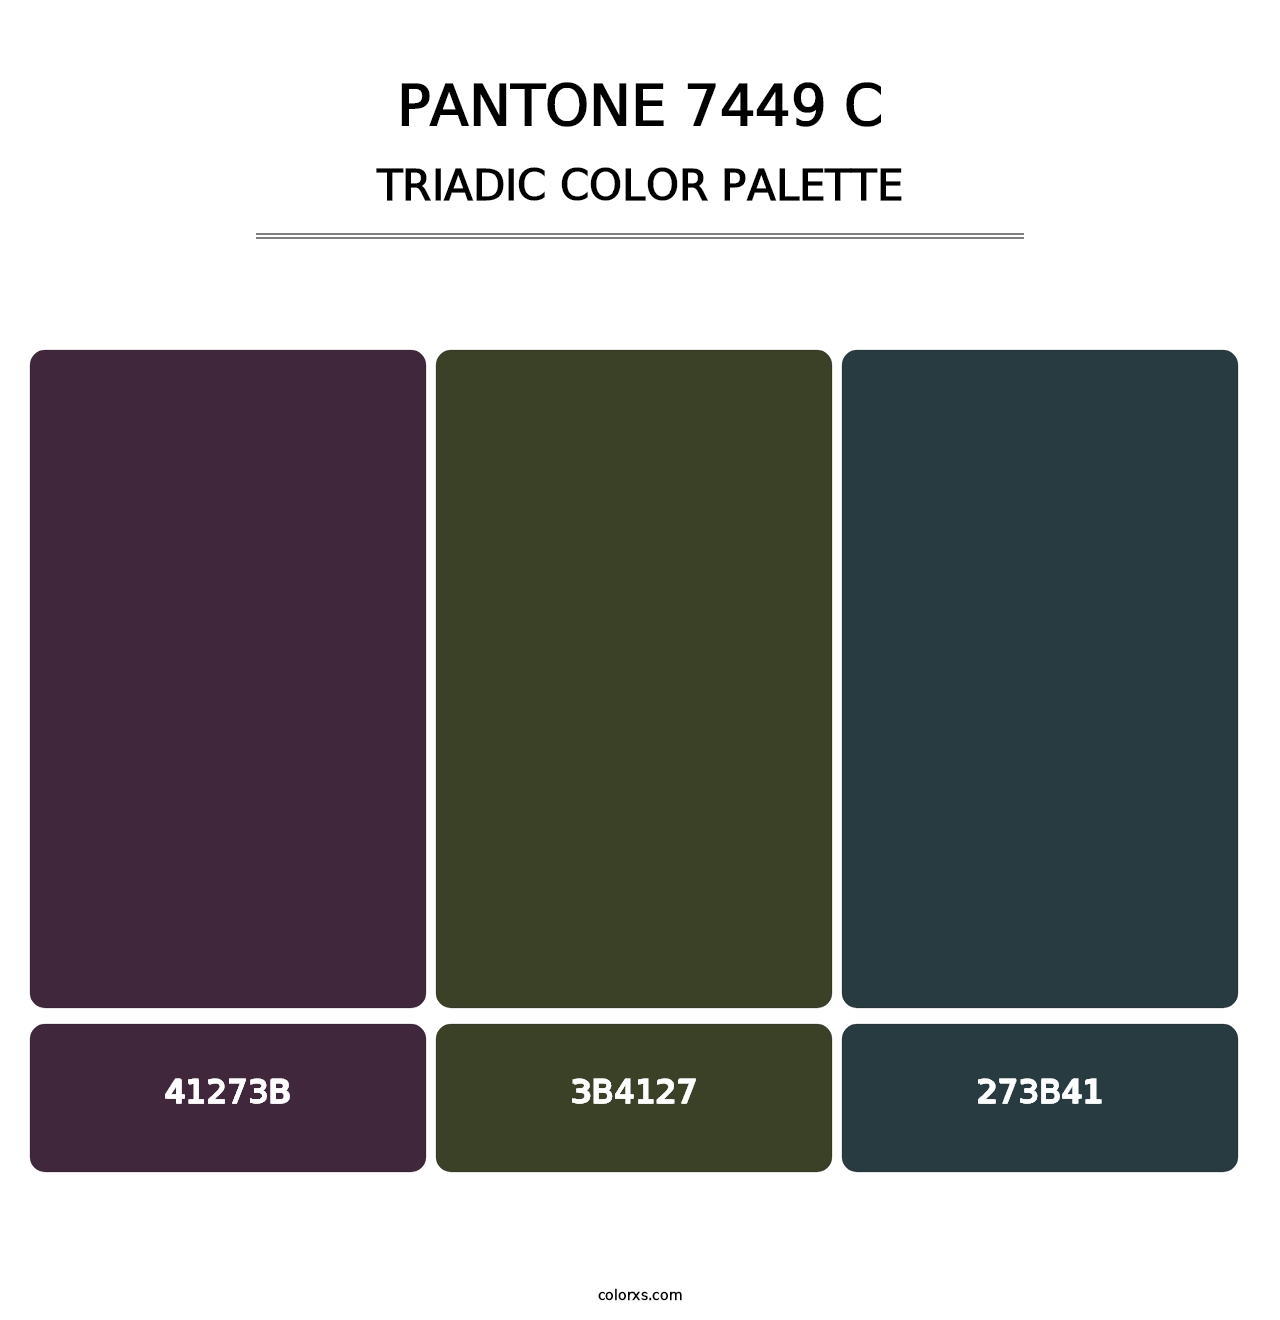 PANTONE 7449 C - Triadic Color Palette